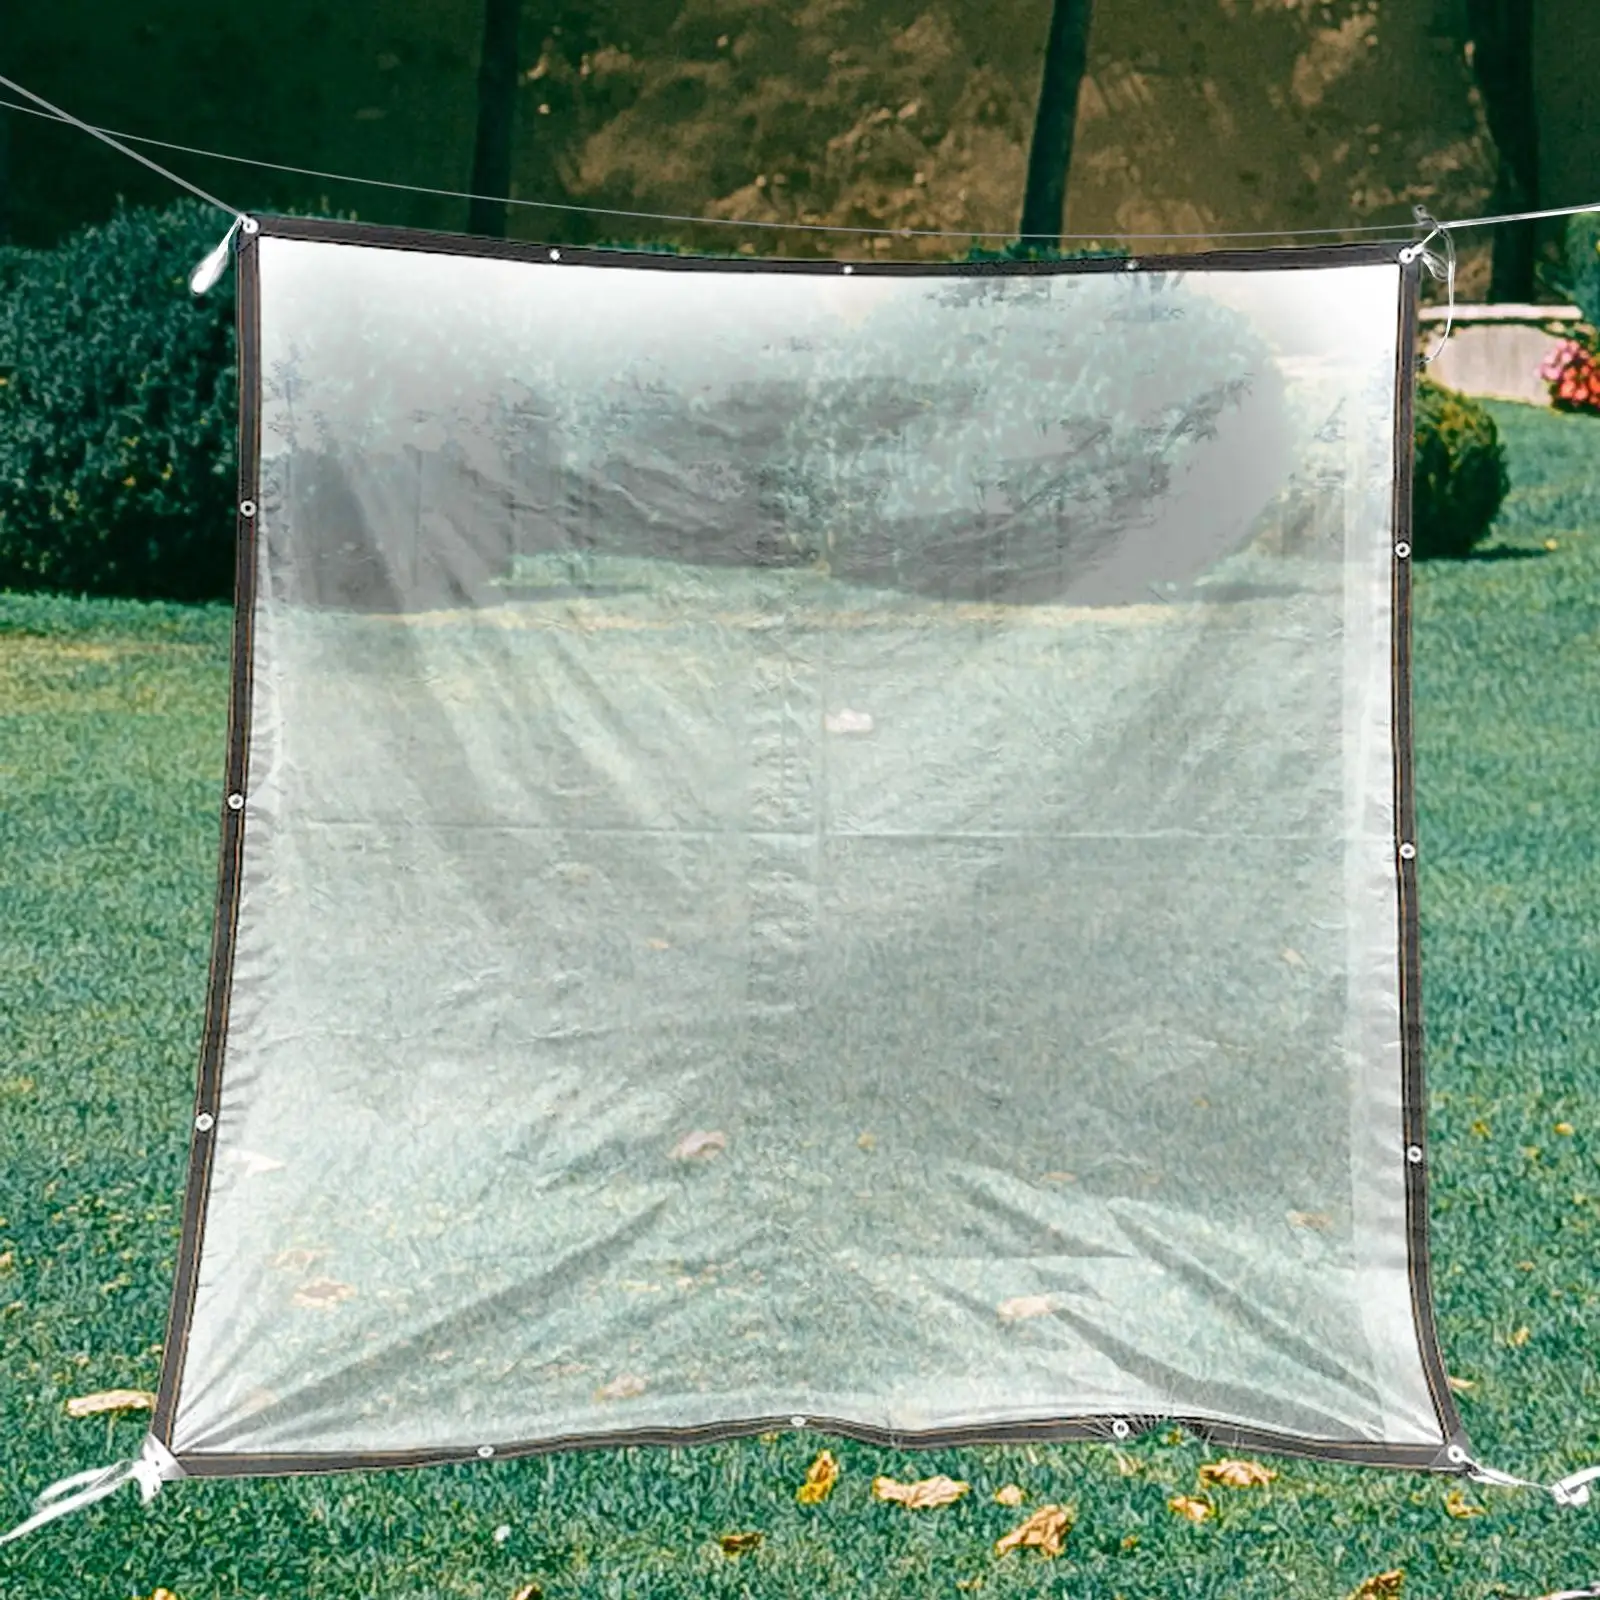 Waterproof Tarp Tear Resistant Multi Purpose PE Tarpaulin Cover for Camping